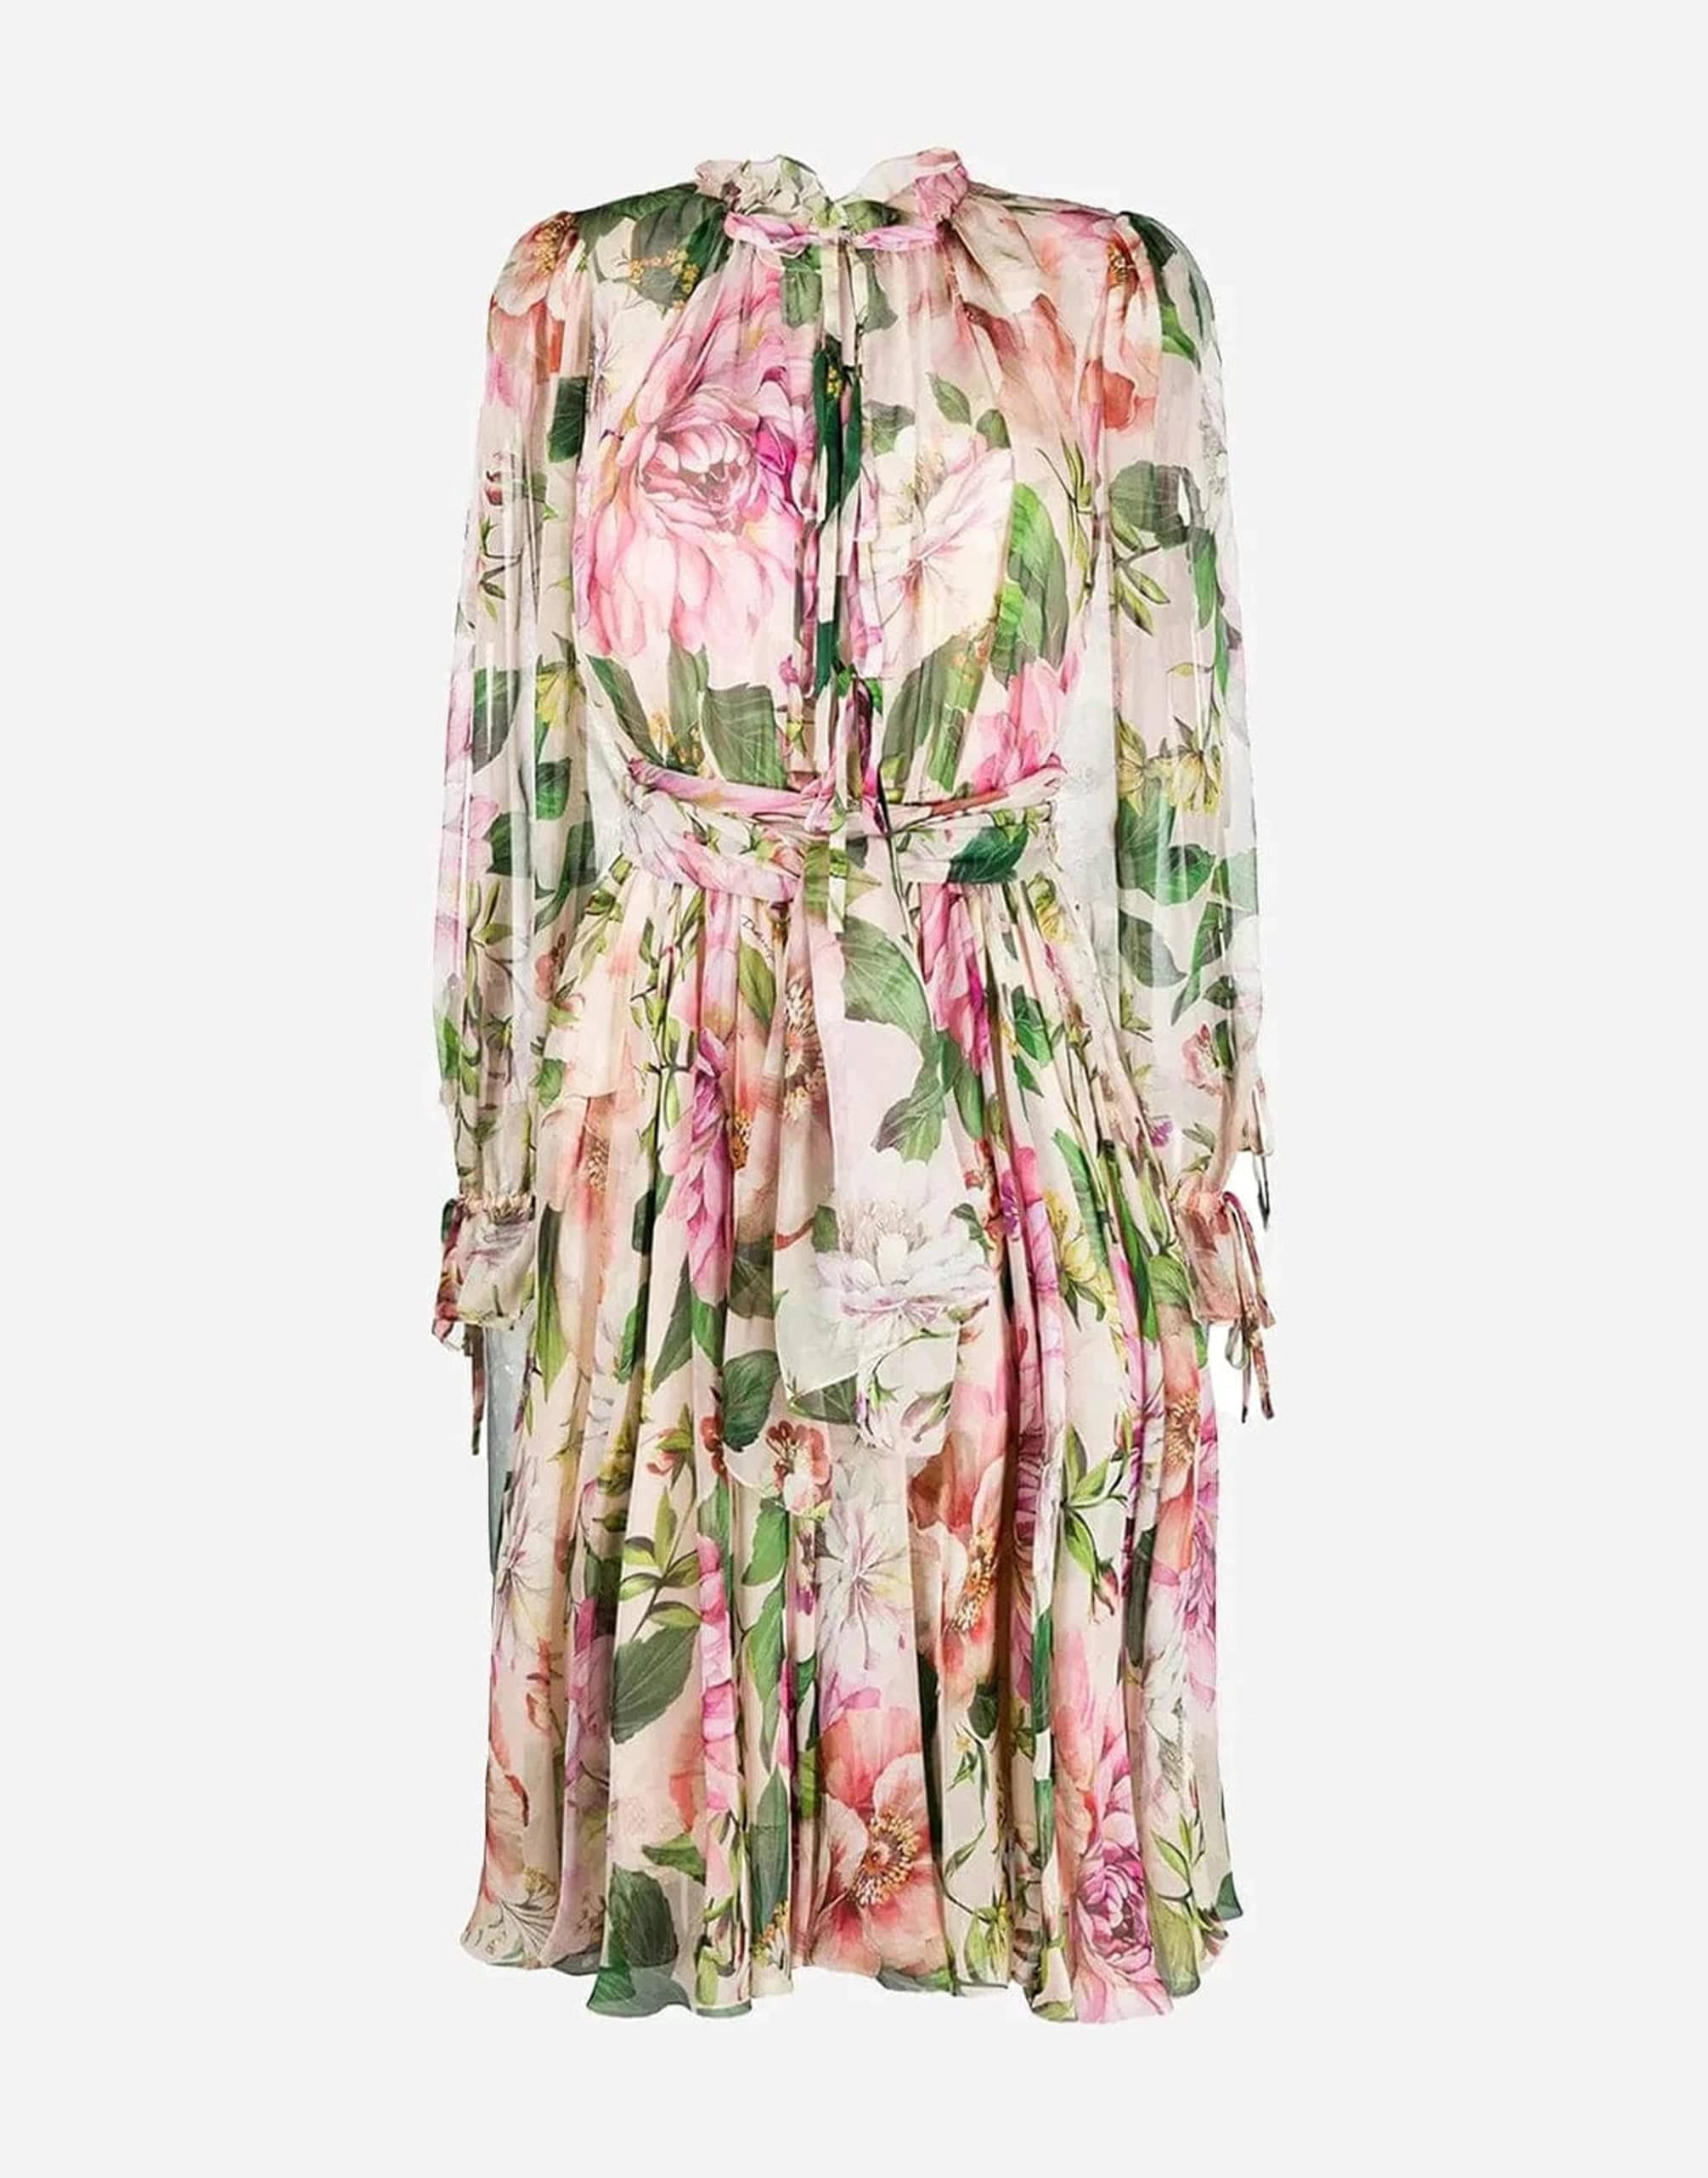 Dolce & Gabbana Floral Print Chiffon Silk Dress